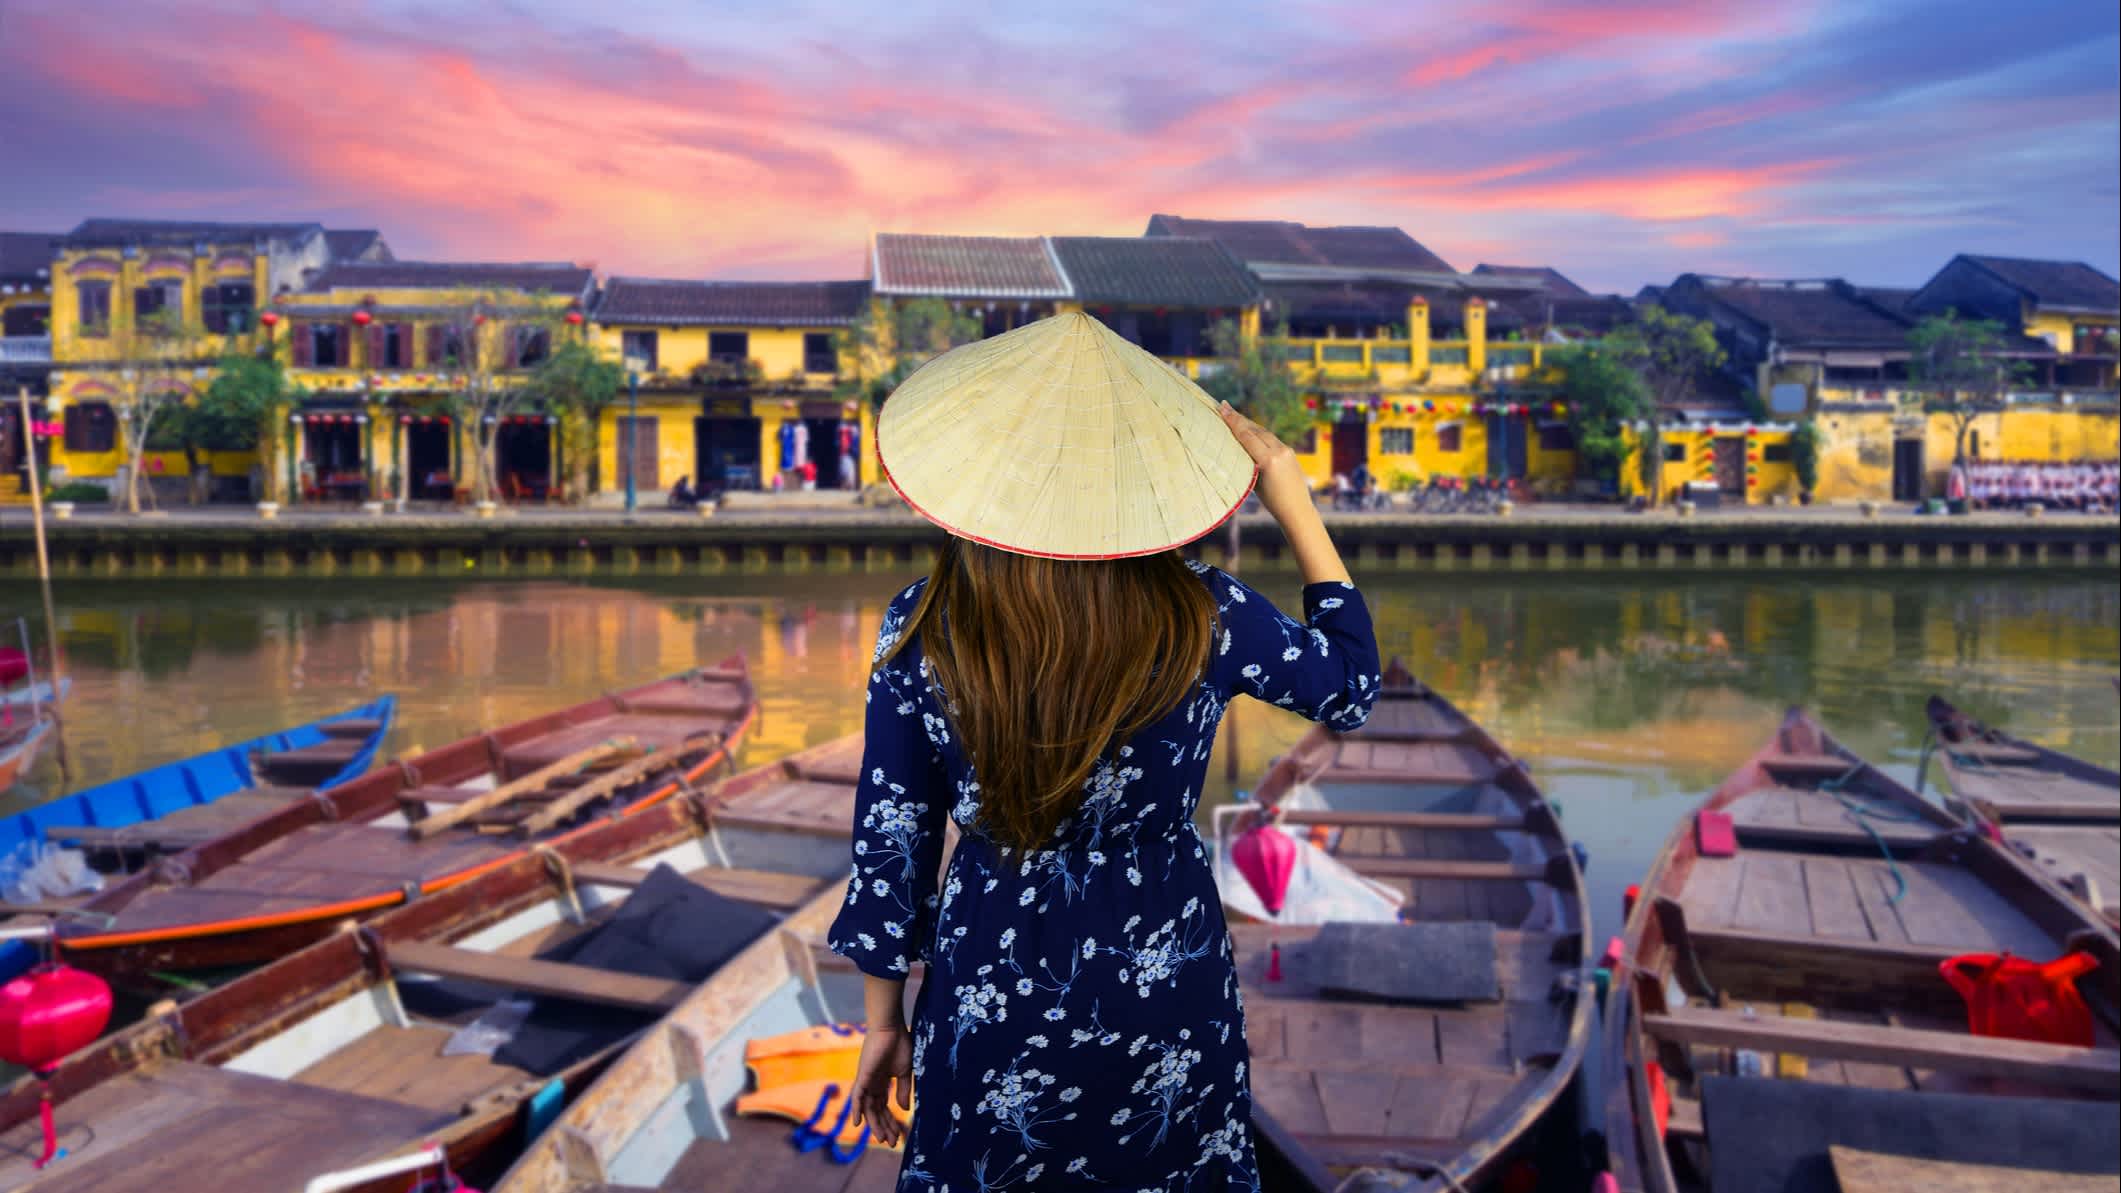 La touriste dans la vieille ville historique de Hoi An au Vietnam.

